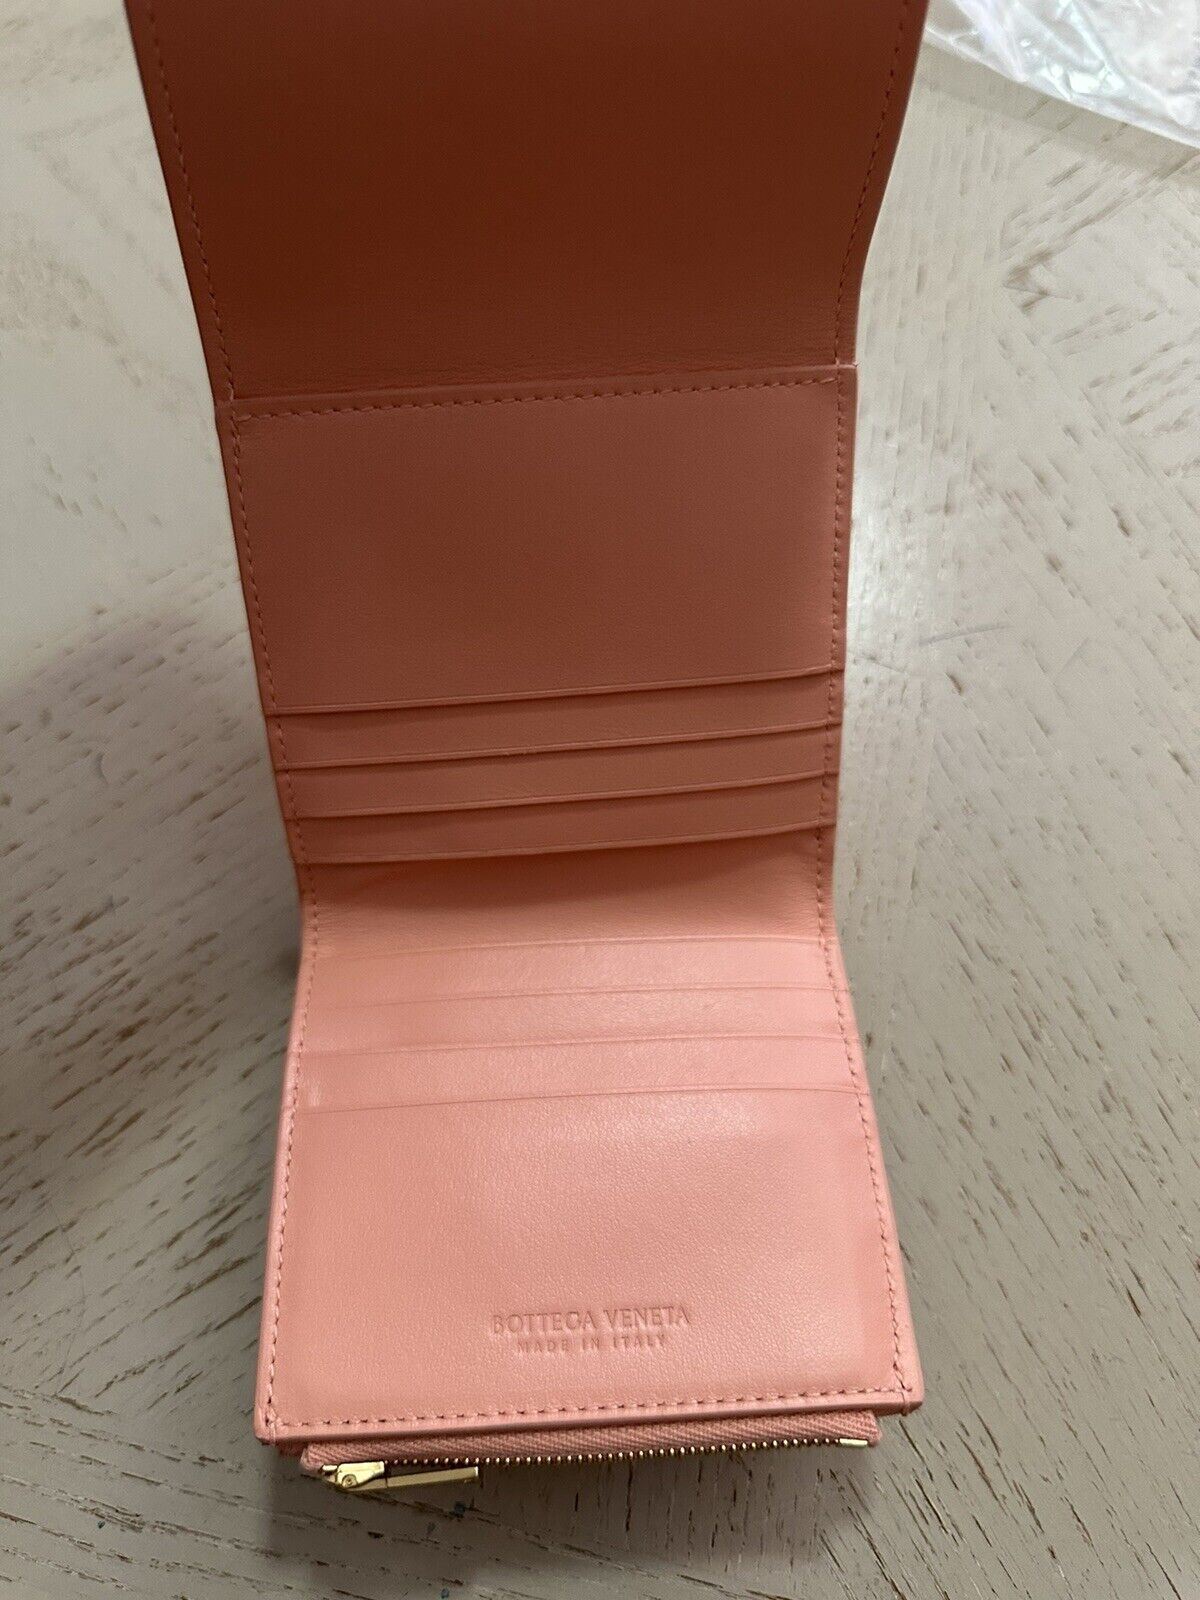 Neu $740 Bottega Veneta Damen Geldbörse Pink-Orange 656830 Italien